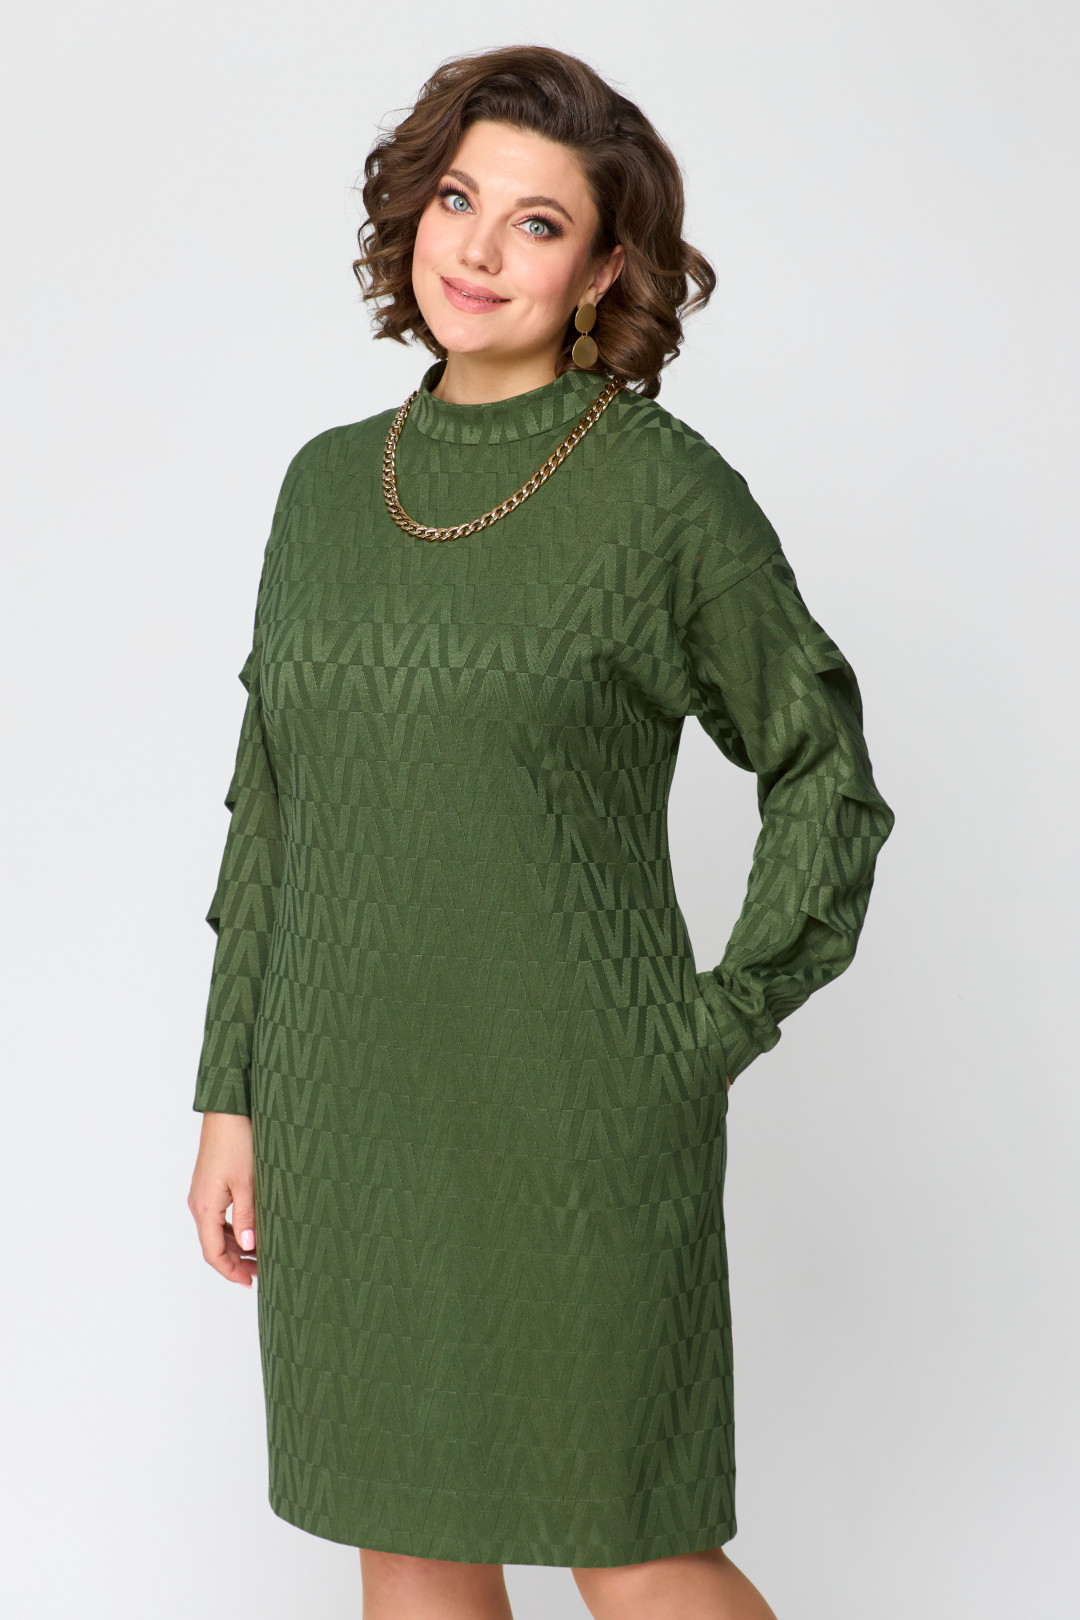 Платье Данаида 2201 зеленый